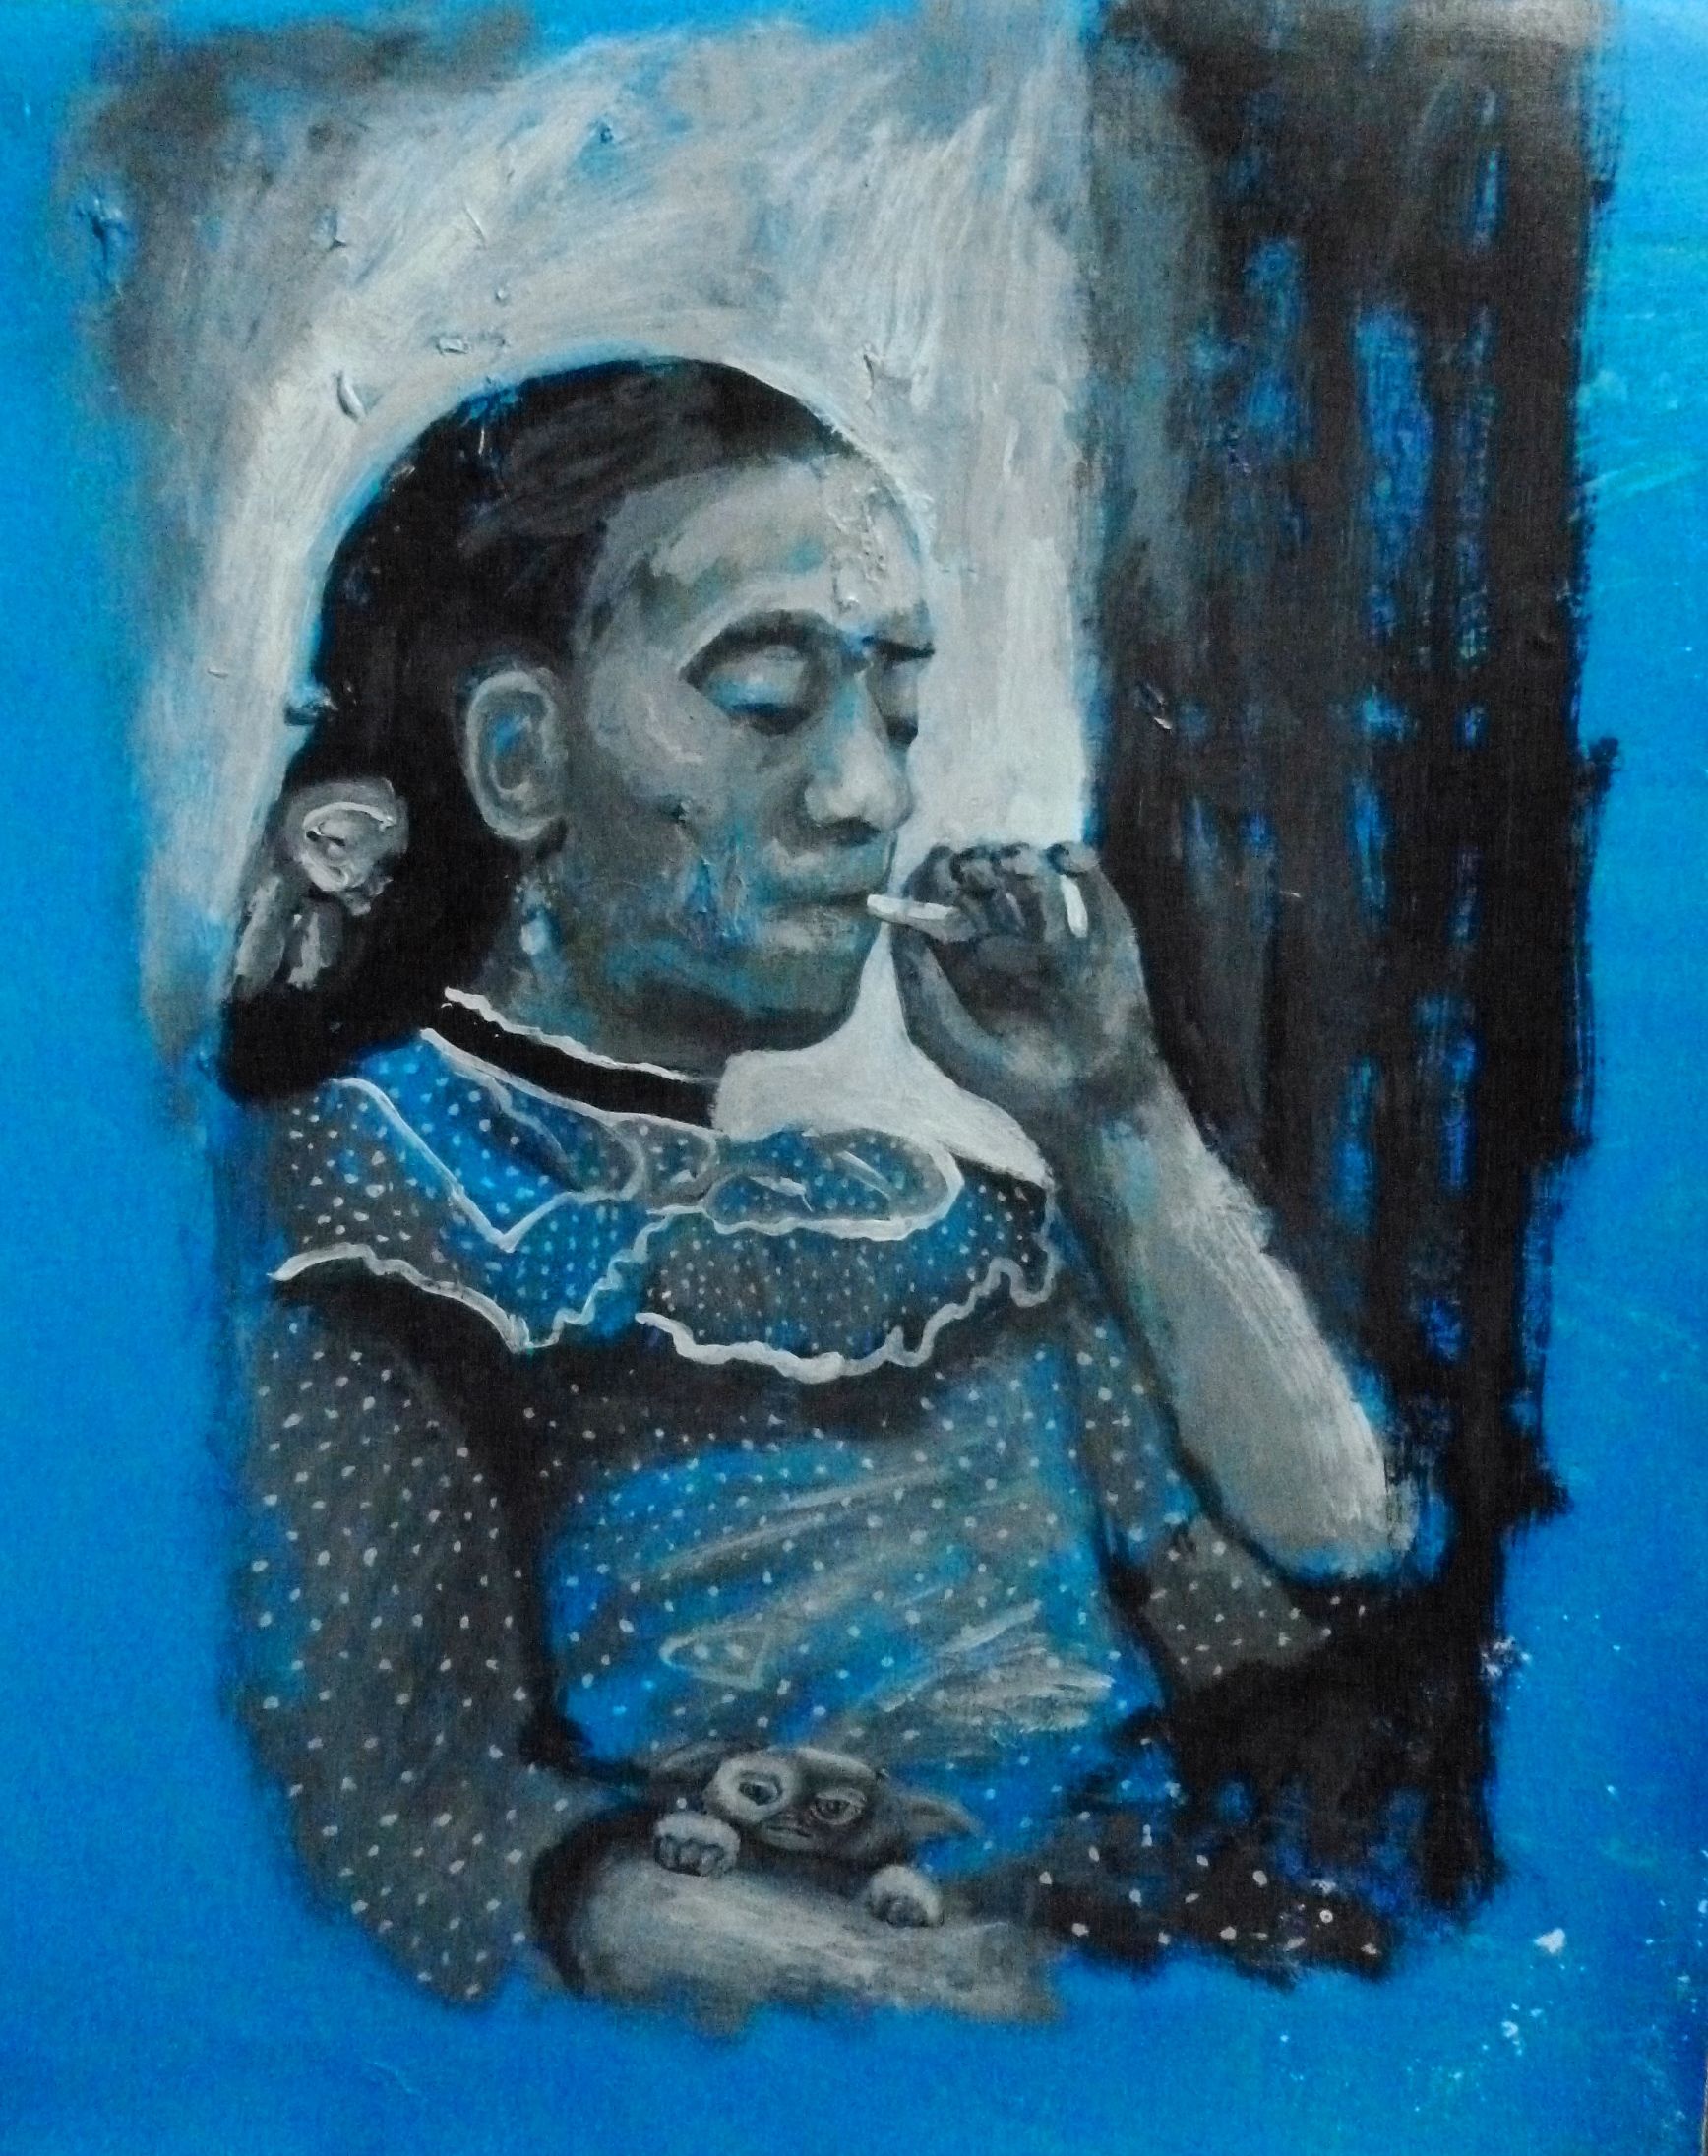 2013. Frida Fumando con Gremling gummon (9)ttttttttttttttttt.jpg